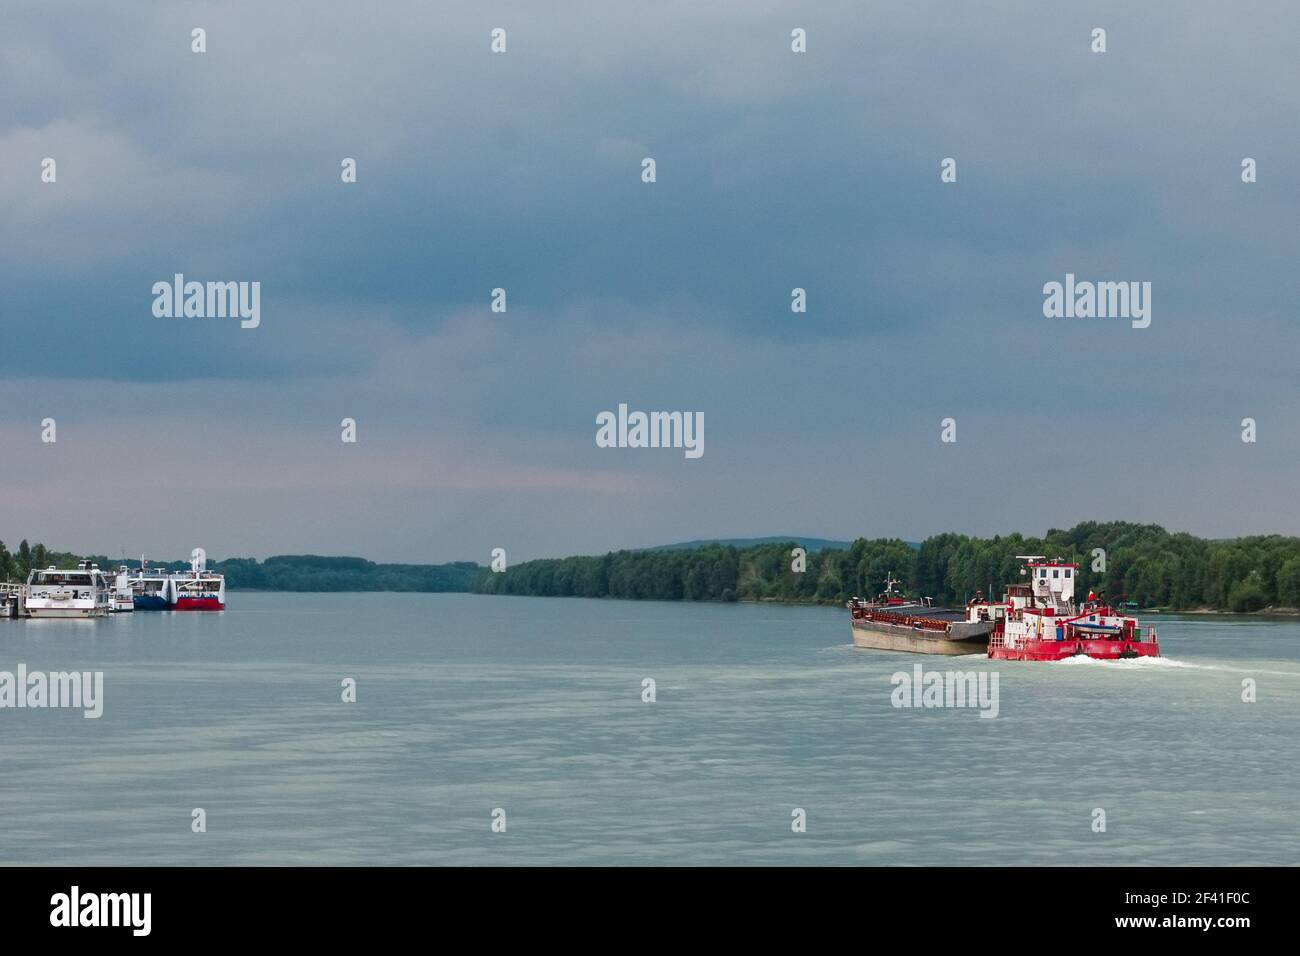 Rote, weiße Frachtschiffe segeln bei bewölktem Wetter entlang des breiten Flussufers, geparkte Schiffe sind in der Ferne. Selektiver Fokus. Barge auf der rechten Seite ist Segel Stockfoto